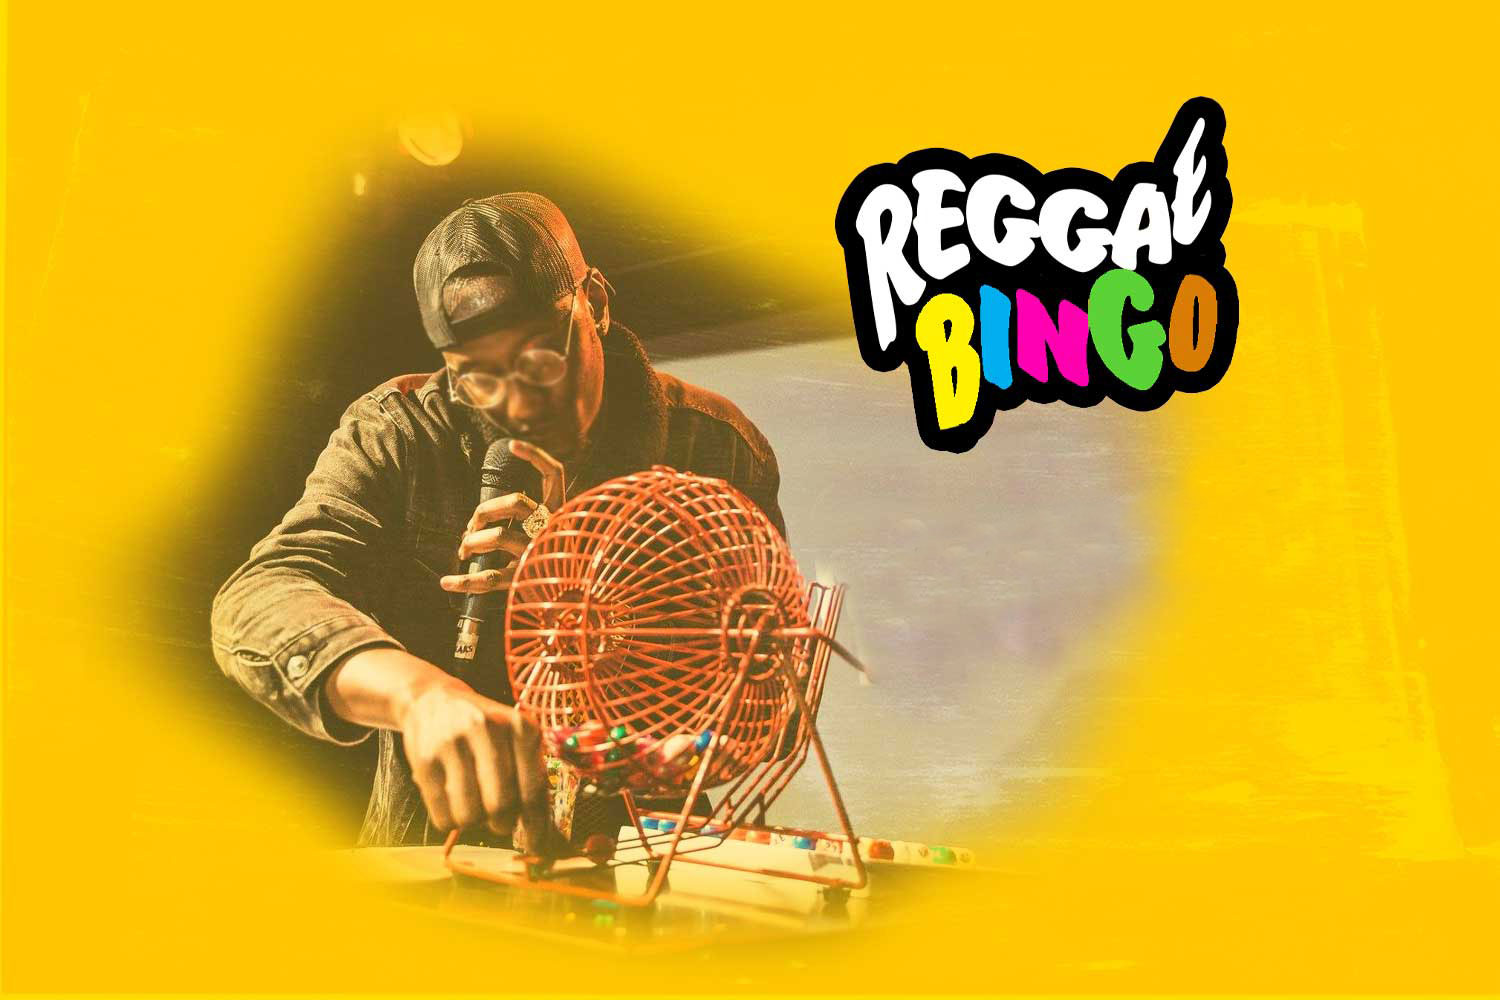 Fri, 15th July 2022 - Reggae Bingo